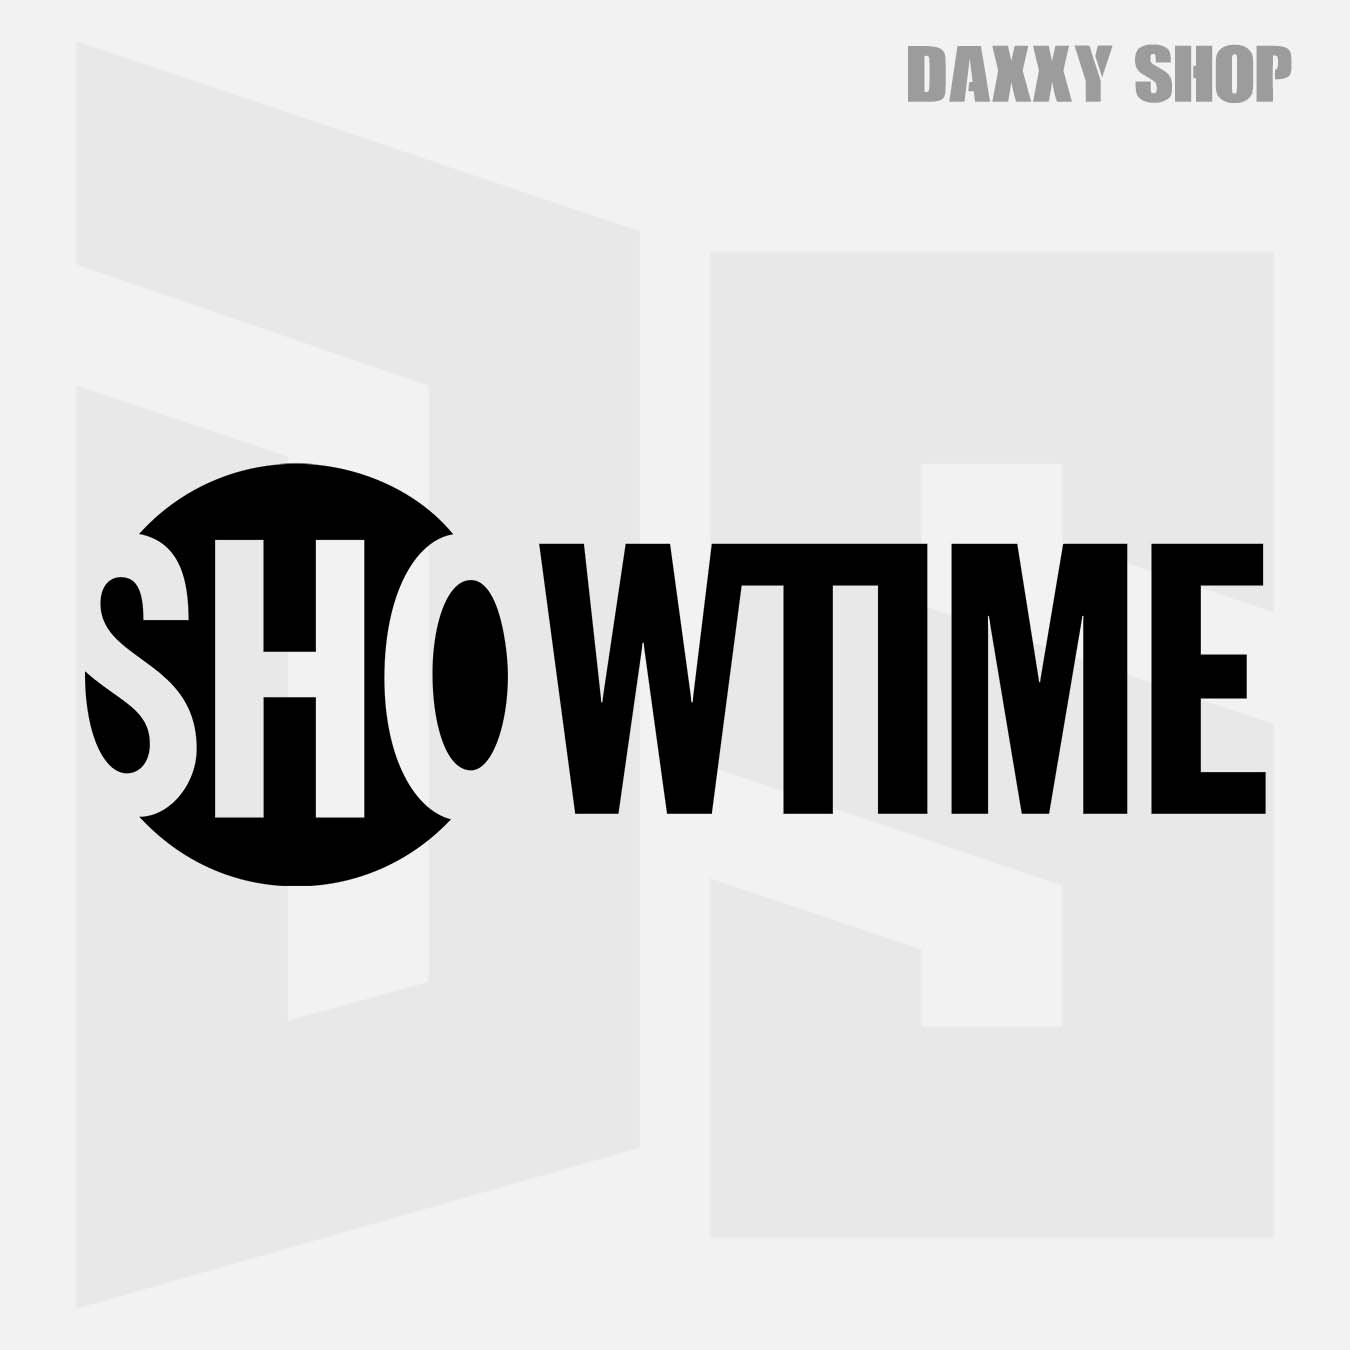 Showtime - daxxyshop.com